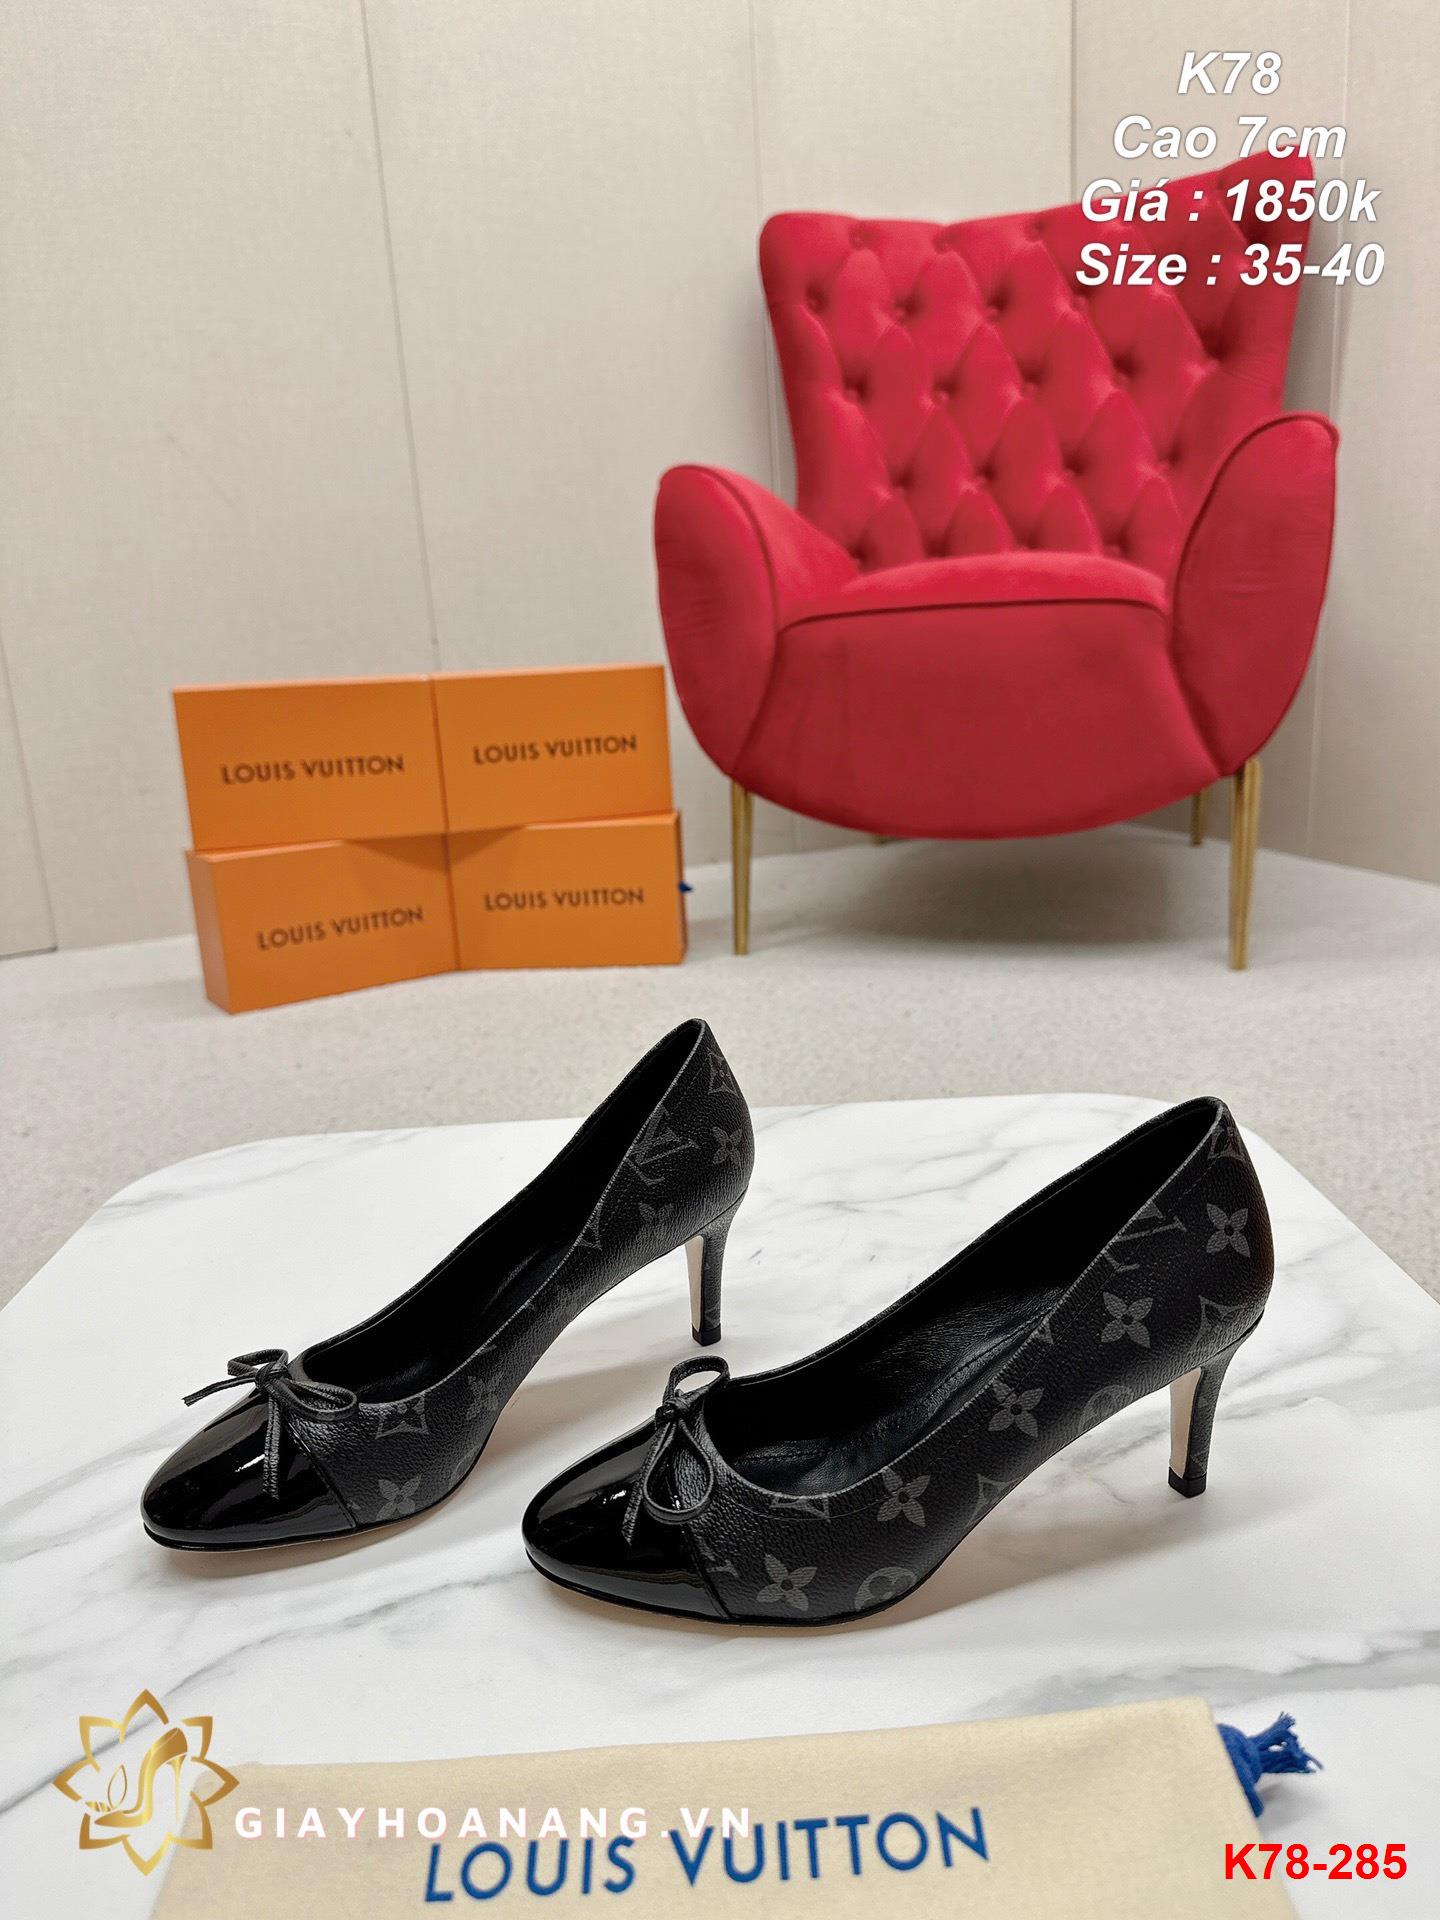 K78-285 Louis Vuitton giày cao 7cm siêu cấp